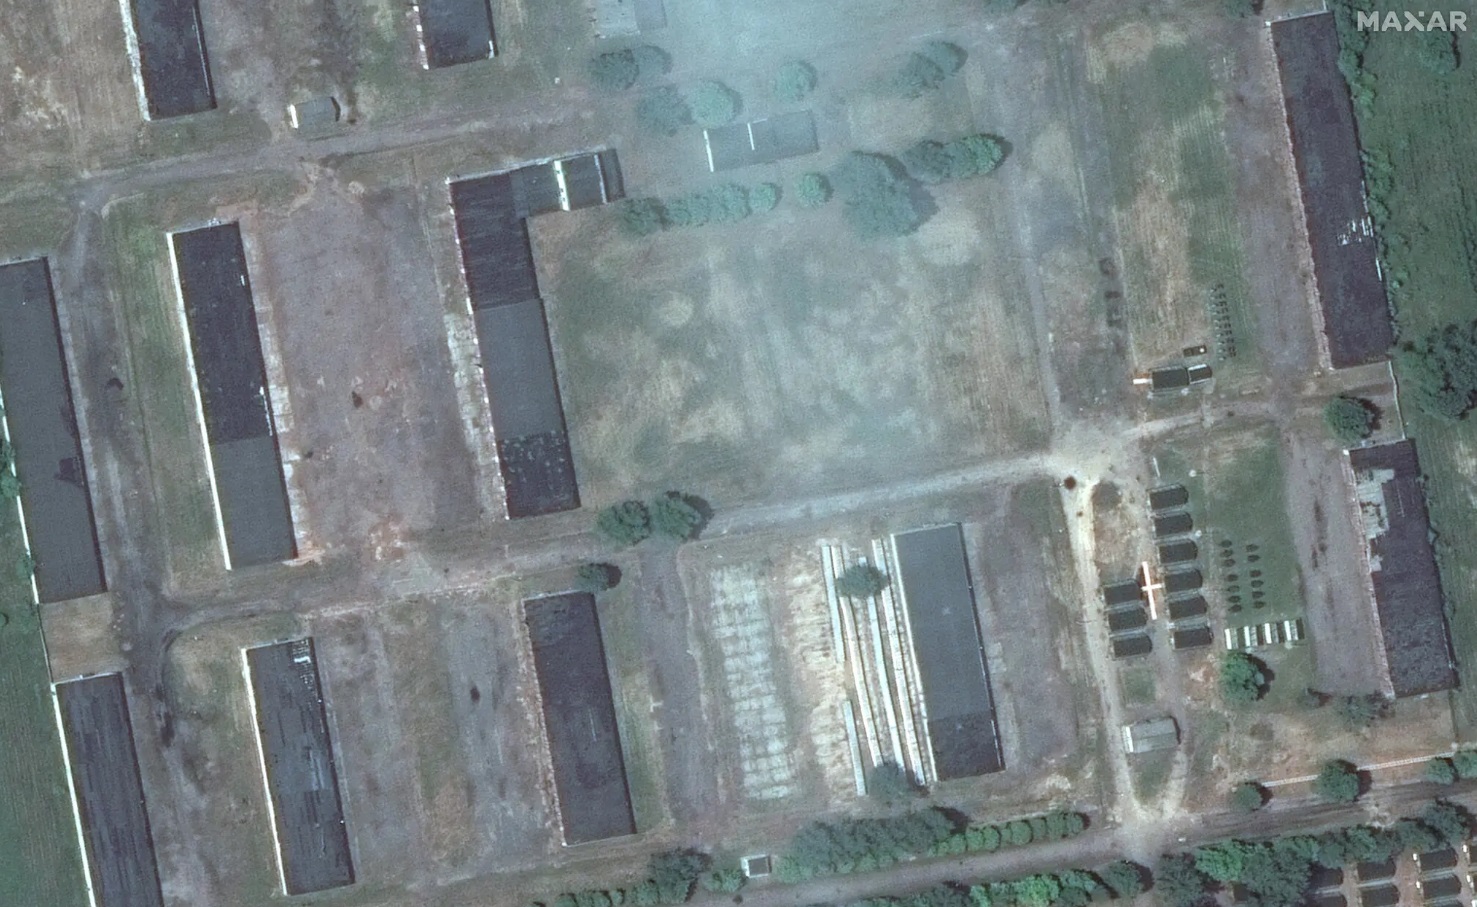 Появление "вагнеровцев" в лагере под Осиповичами попало на спутниковые снимки - СМИ